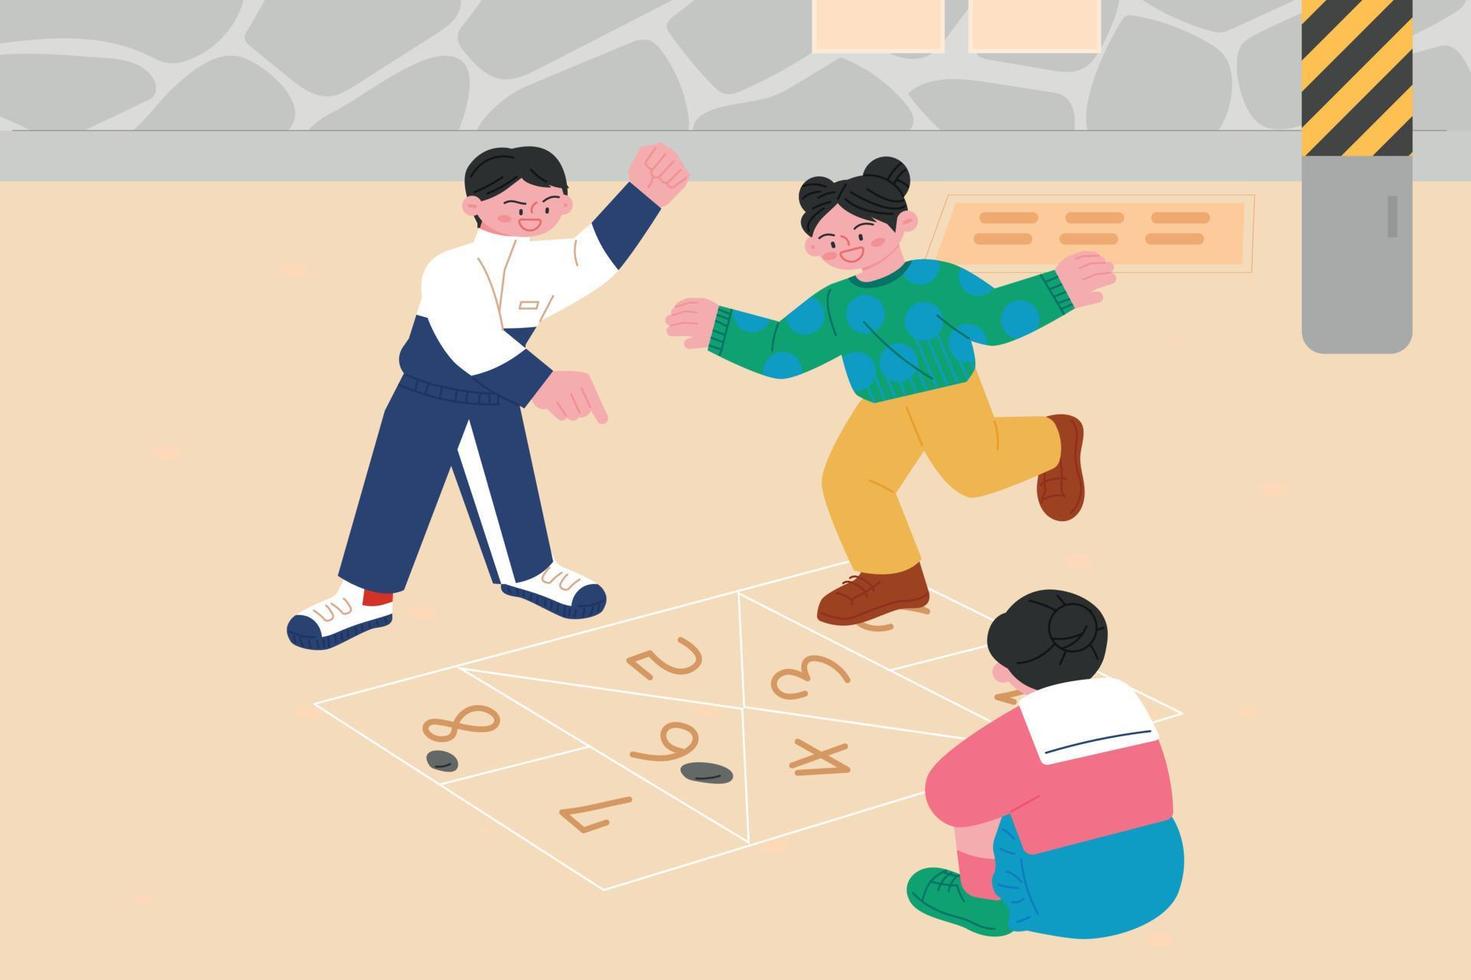 Koreanische Kinderspiele. Kinder malen Linien auf den Boden und spielen Himmel und Hölle. vektor